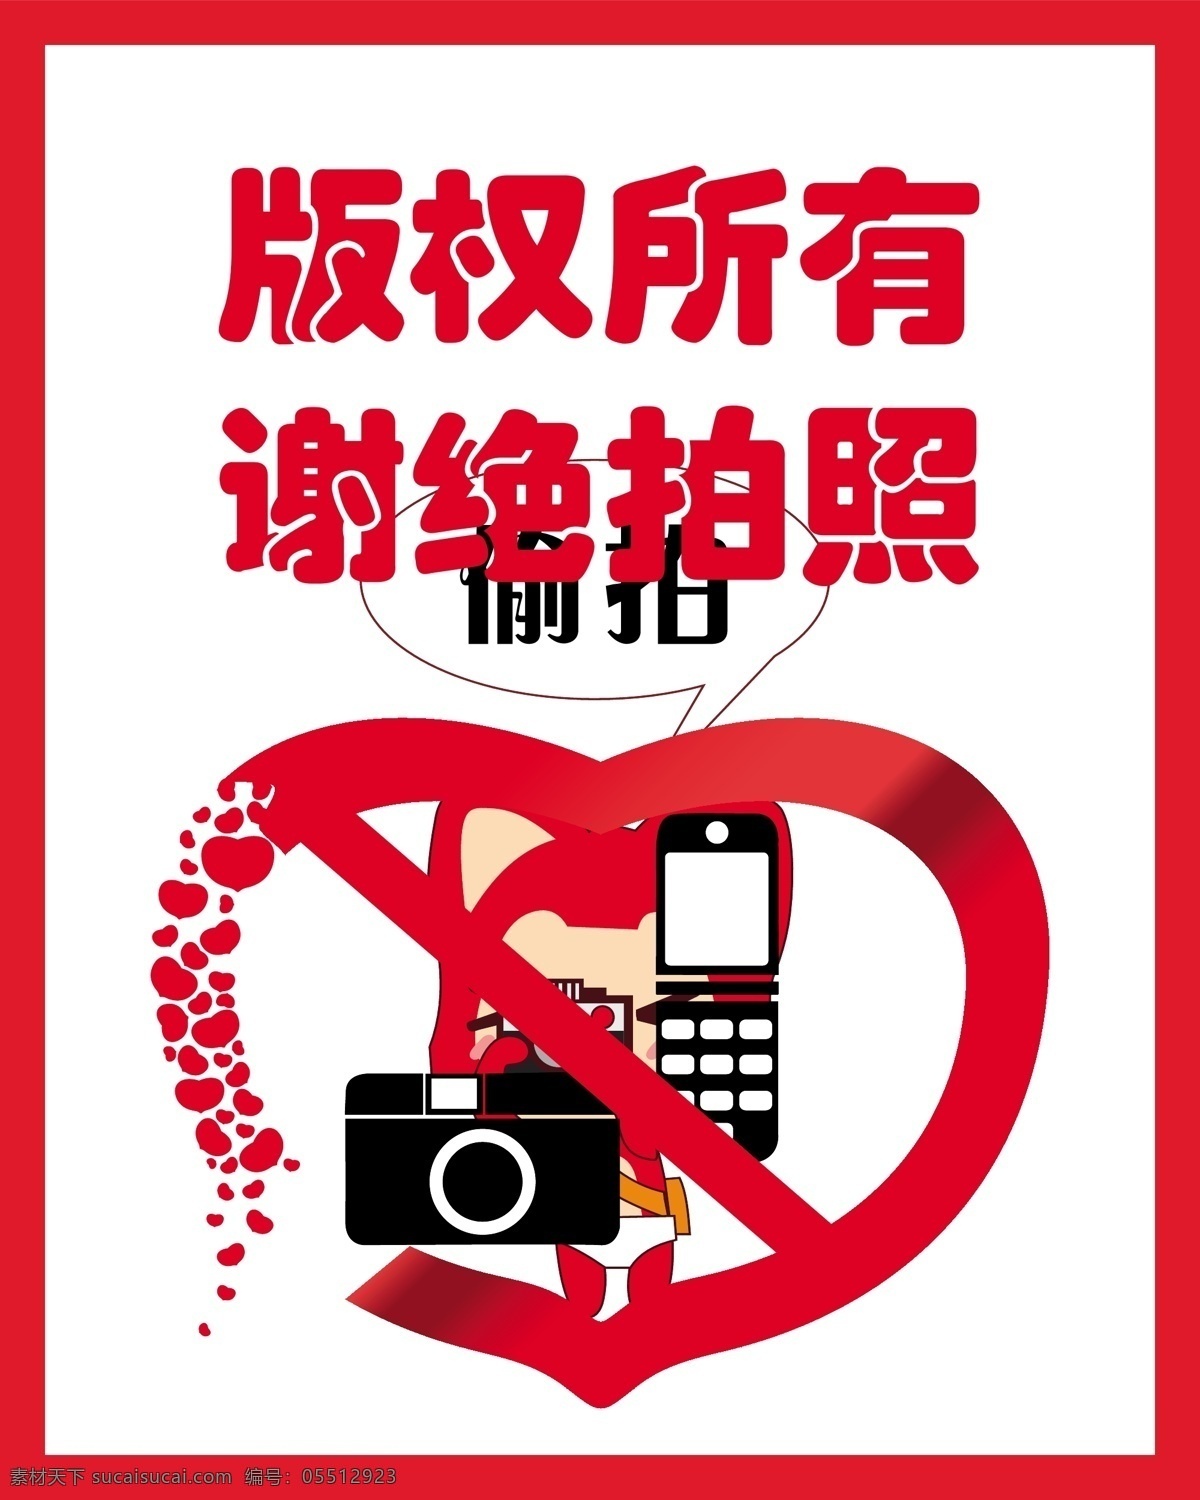 标识标志图标 公共标识标志 红色 禁止拍照 手机 相机 版权所有 禁止 拍照 矢量 模板下载 爱心提示 psd源文件